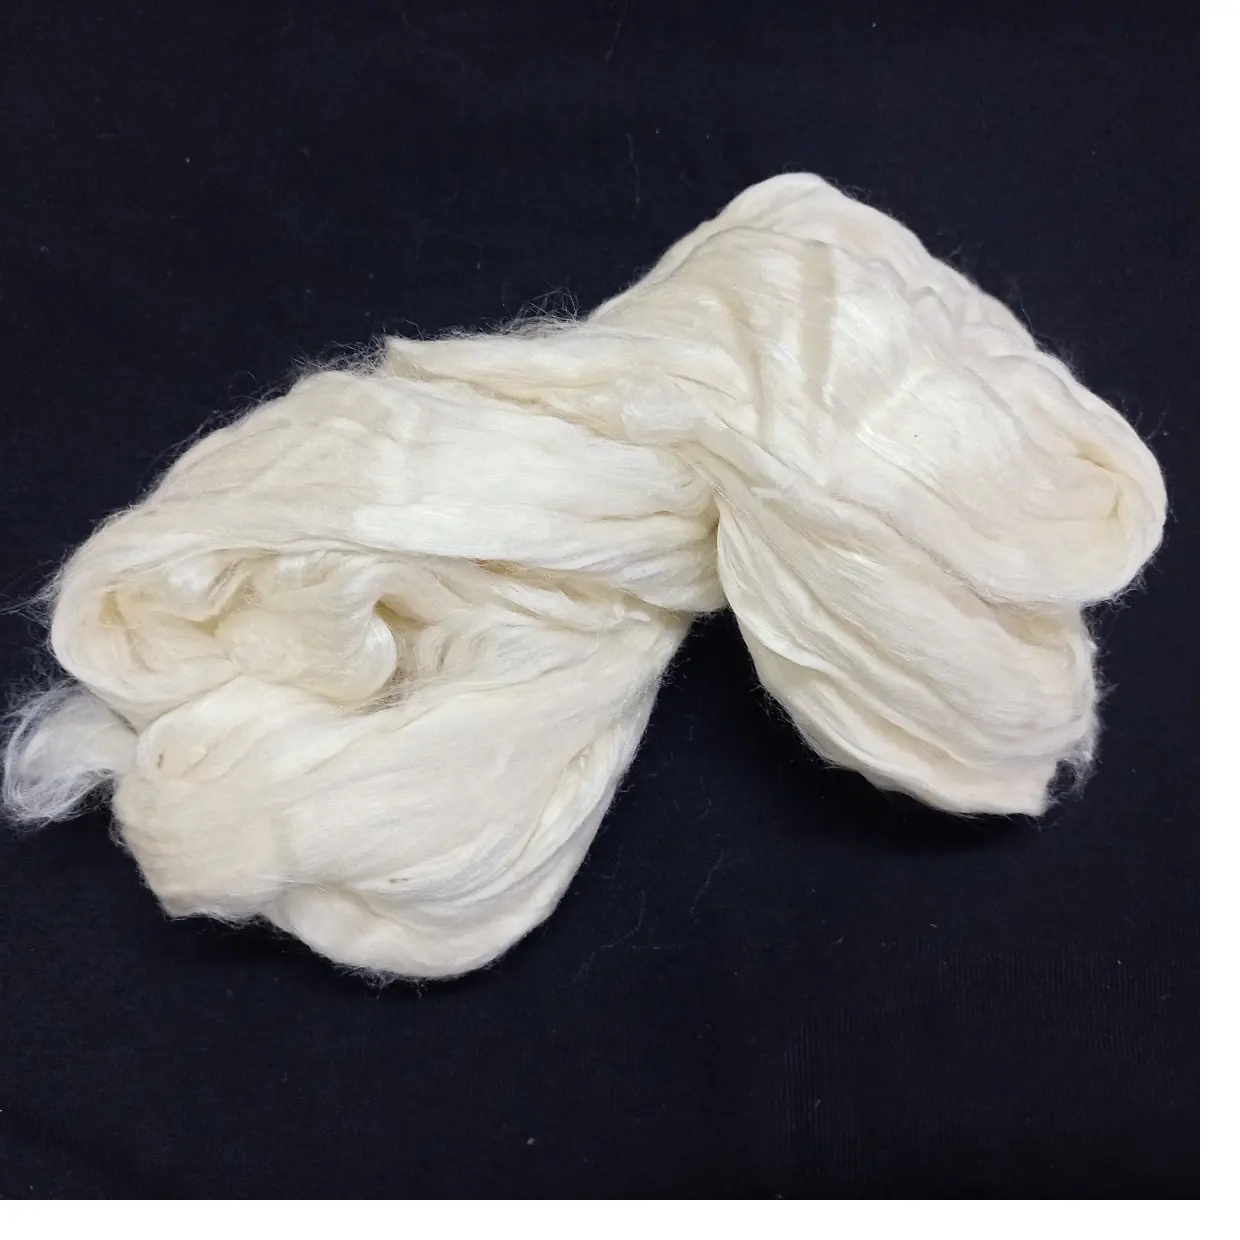 कस्टम मेड 100% प्राकृतिक सफेद रंगाई के लिए उपयुक्त में इरी रेशम अलक यार्न और पुनर्विक्रय के लिए फाइबर दुकानों के लिए आदर्श